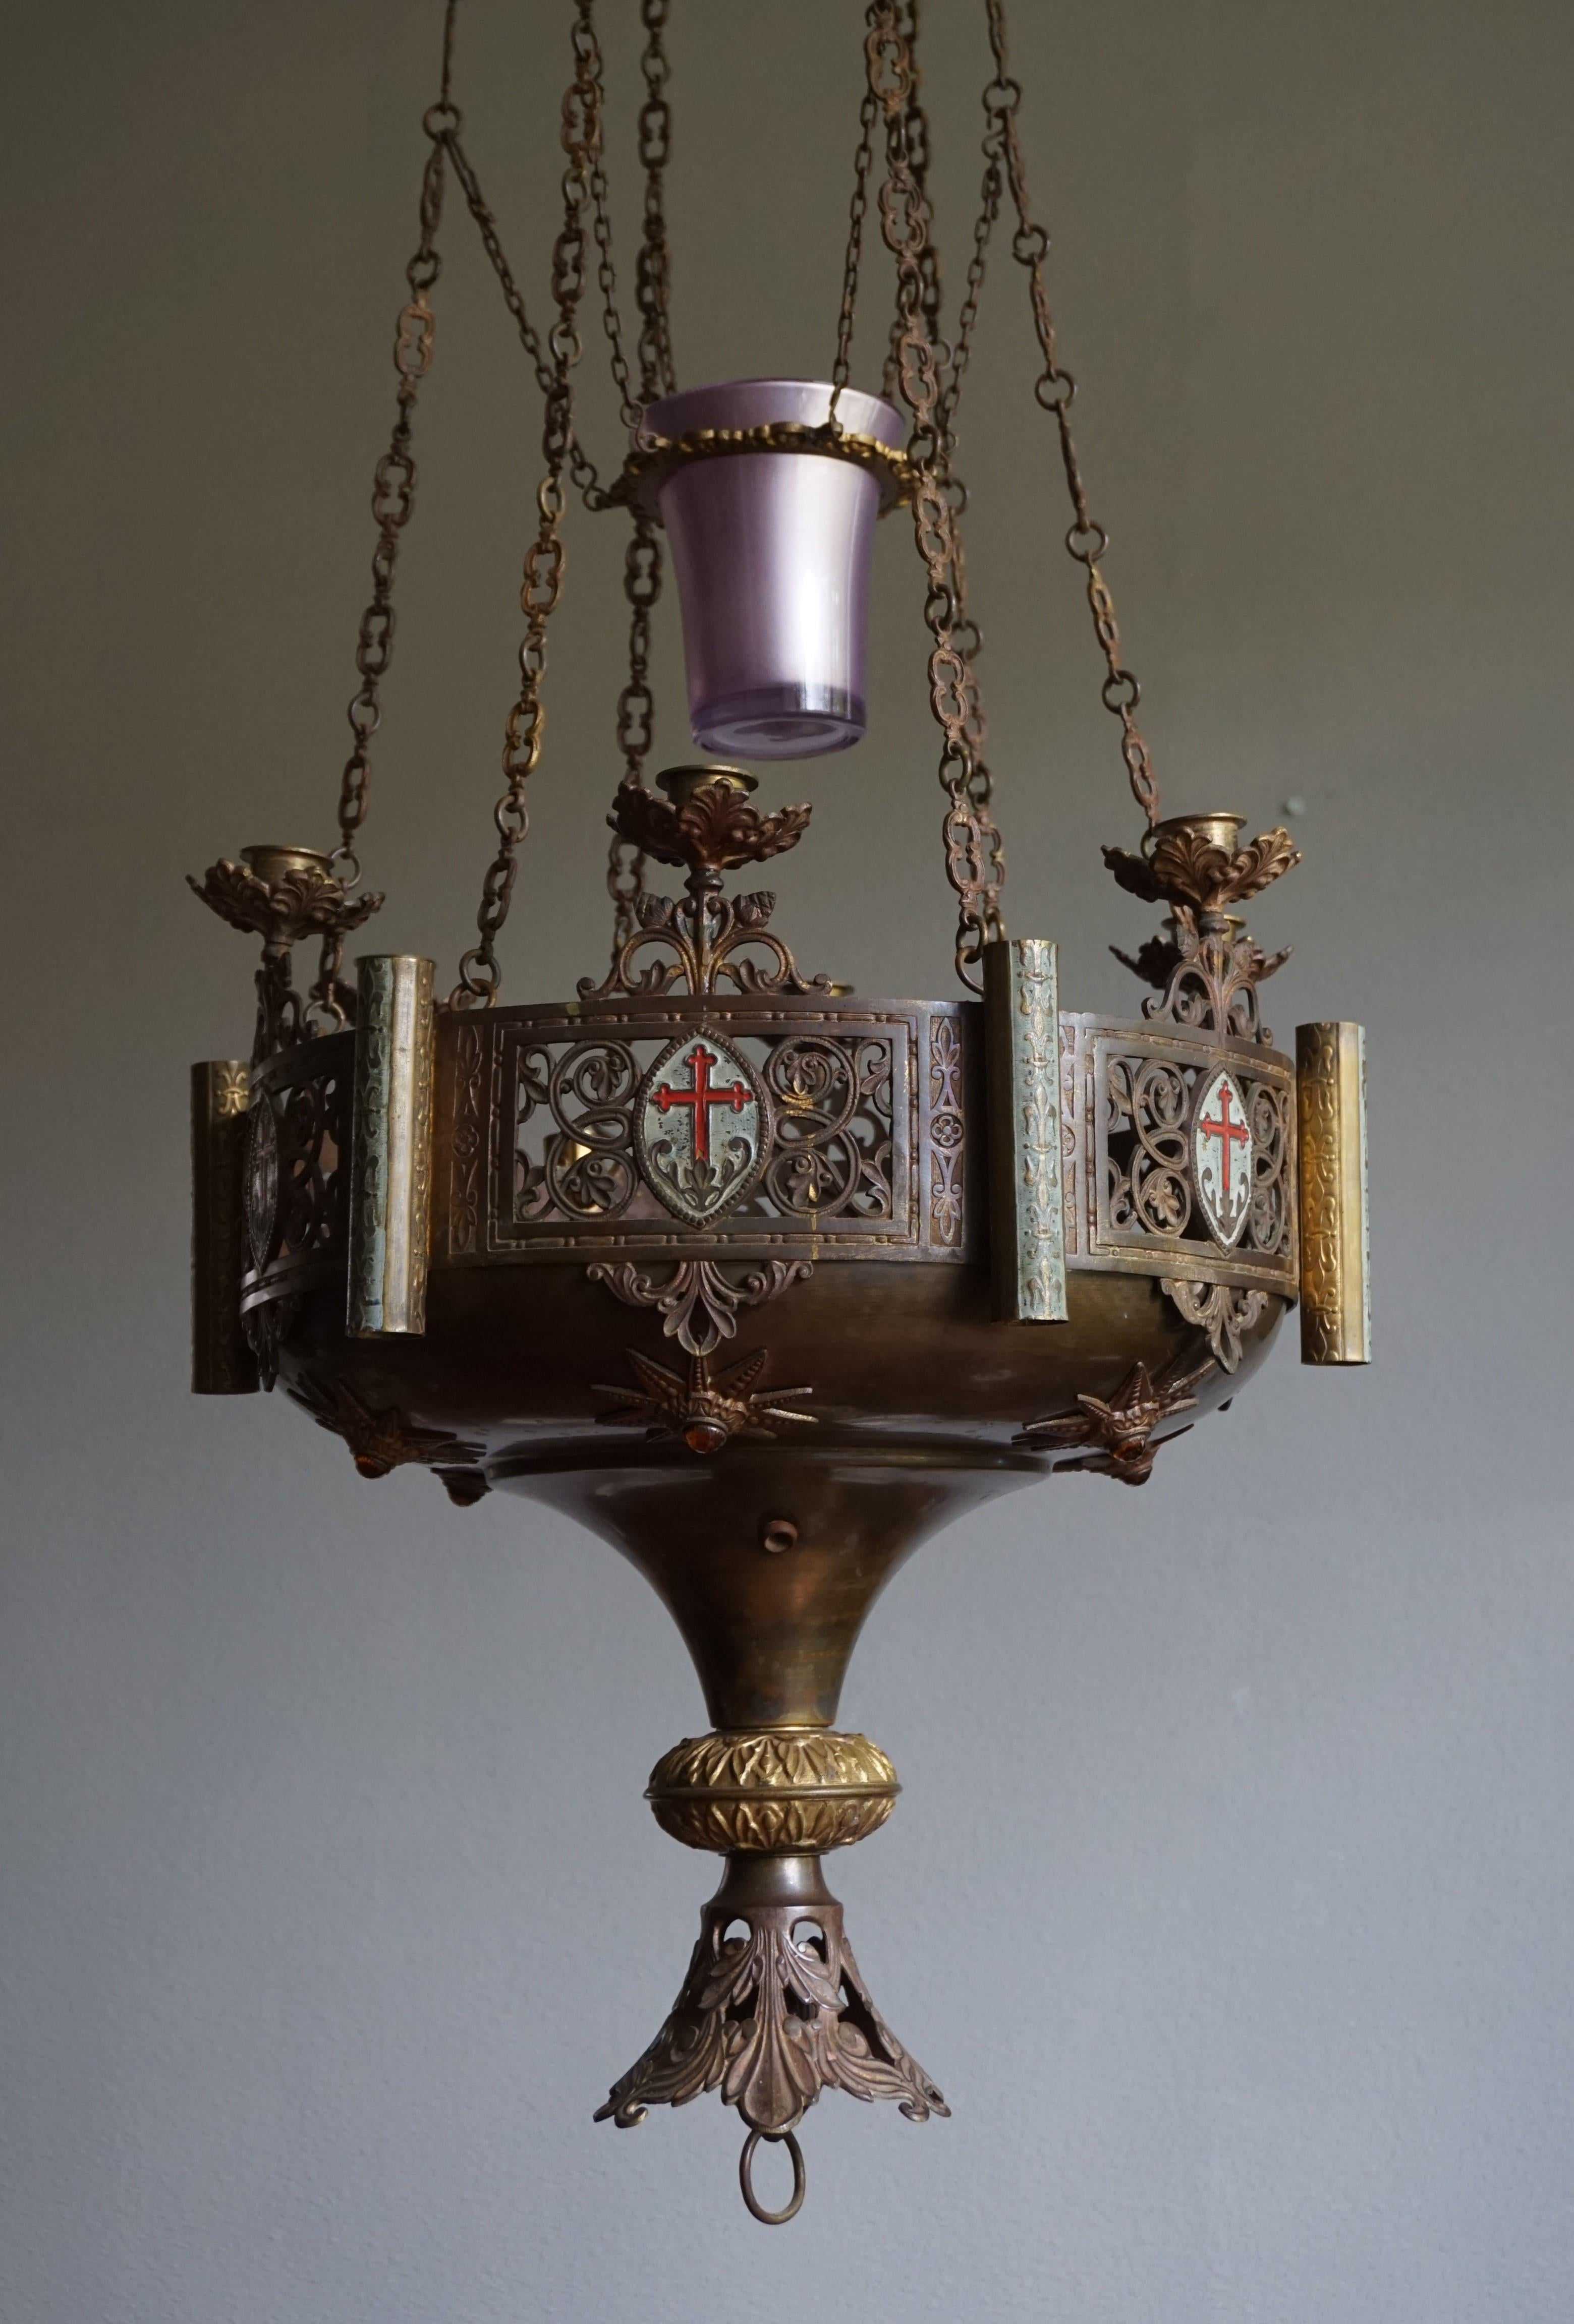 Beeindruckender siebenflammiger gotischer Kronleuchter aus den 1800er Jahren.

Dieser seltene und wunderschön aussehende Kirchenleuchter ist ein weiterer unserer jüngsten großartigen Funde. Das Design mit all den erstaunlichen, handgefertigten